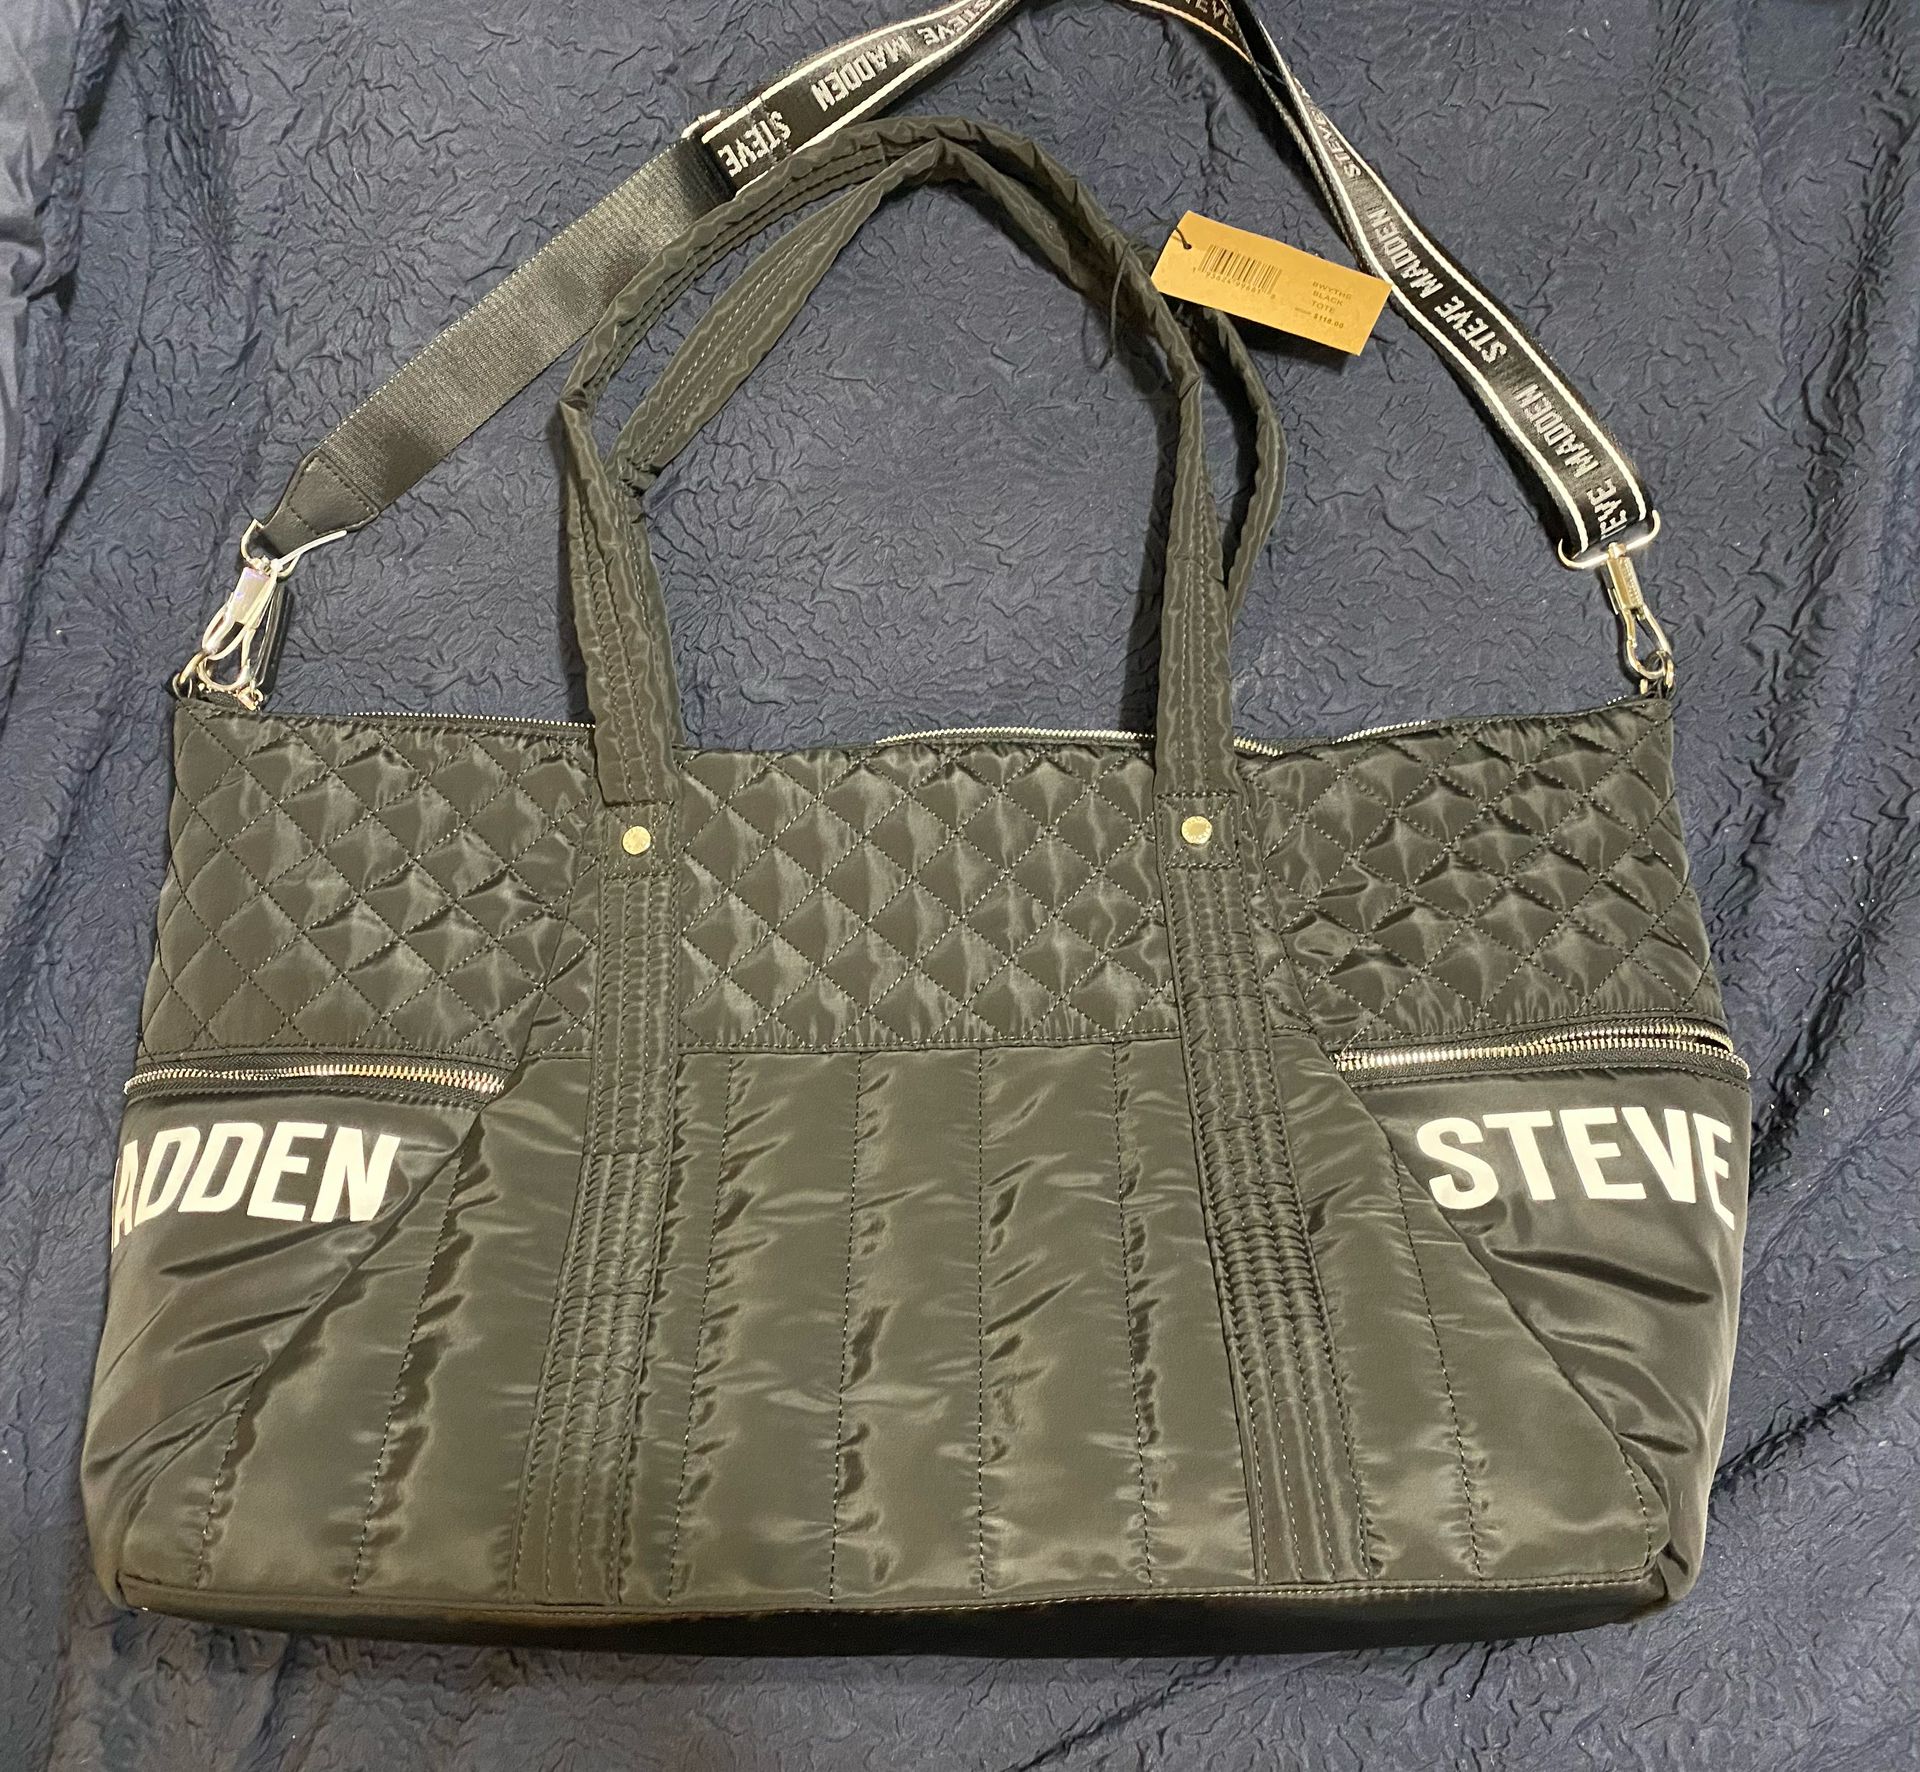 Steve Madden Black Bag